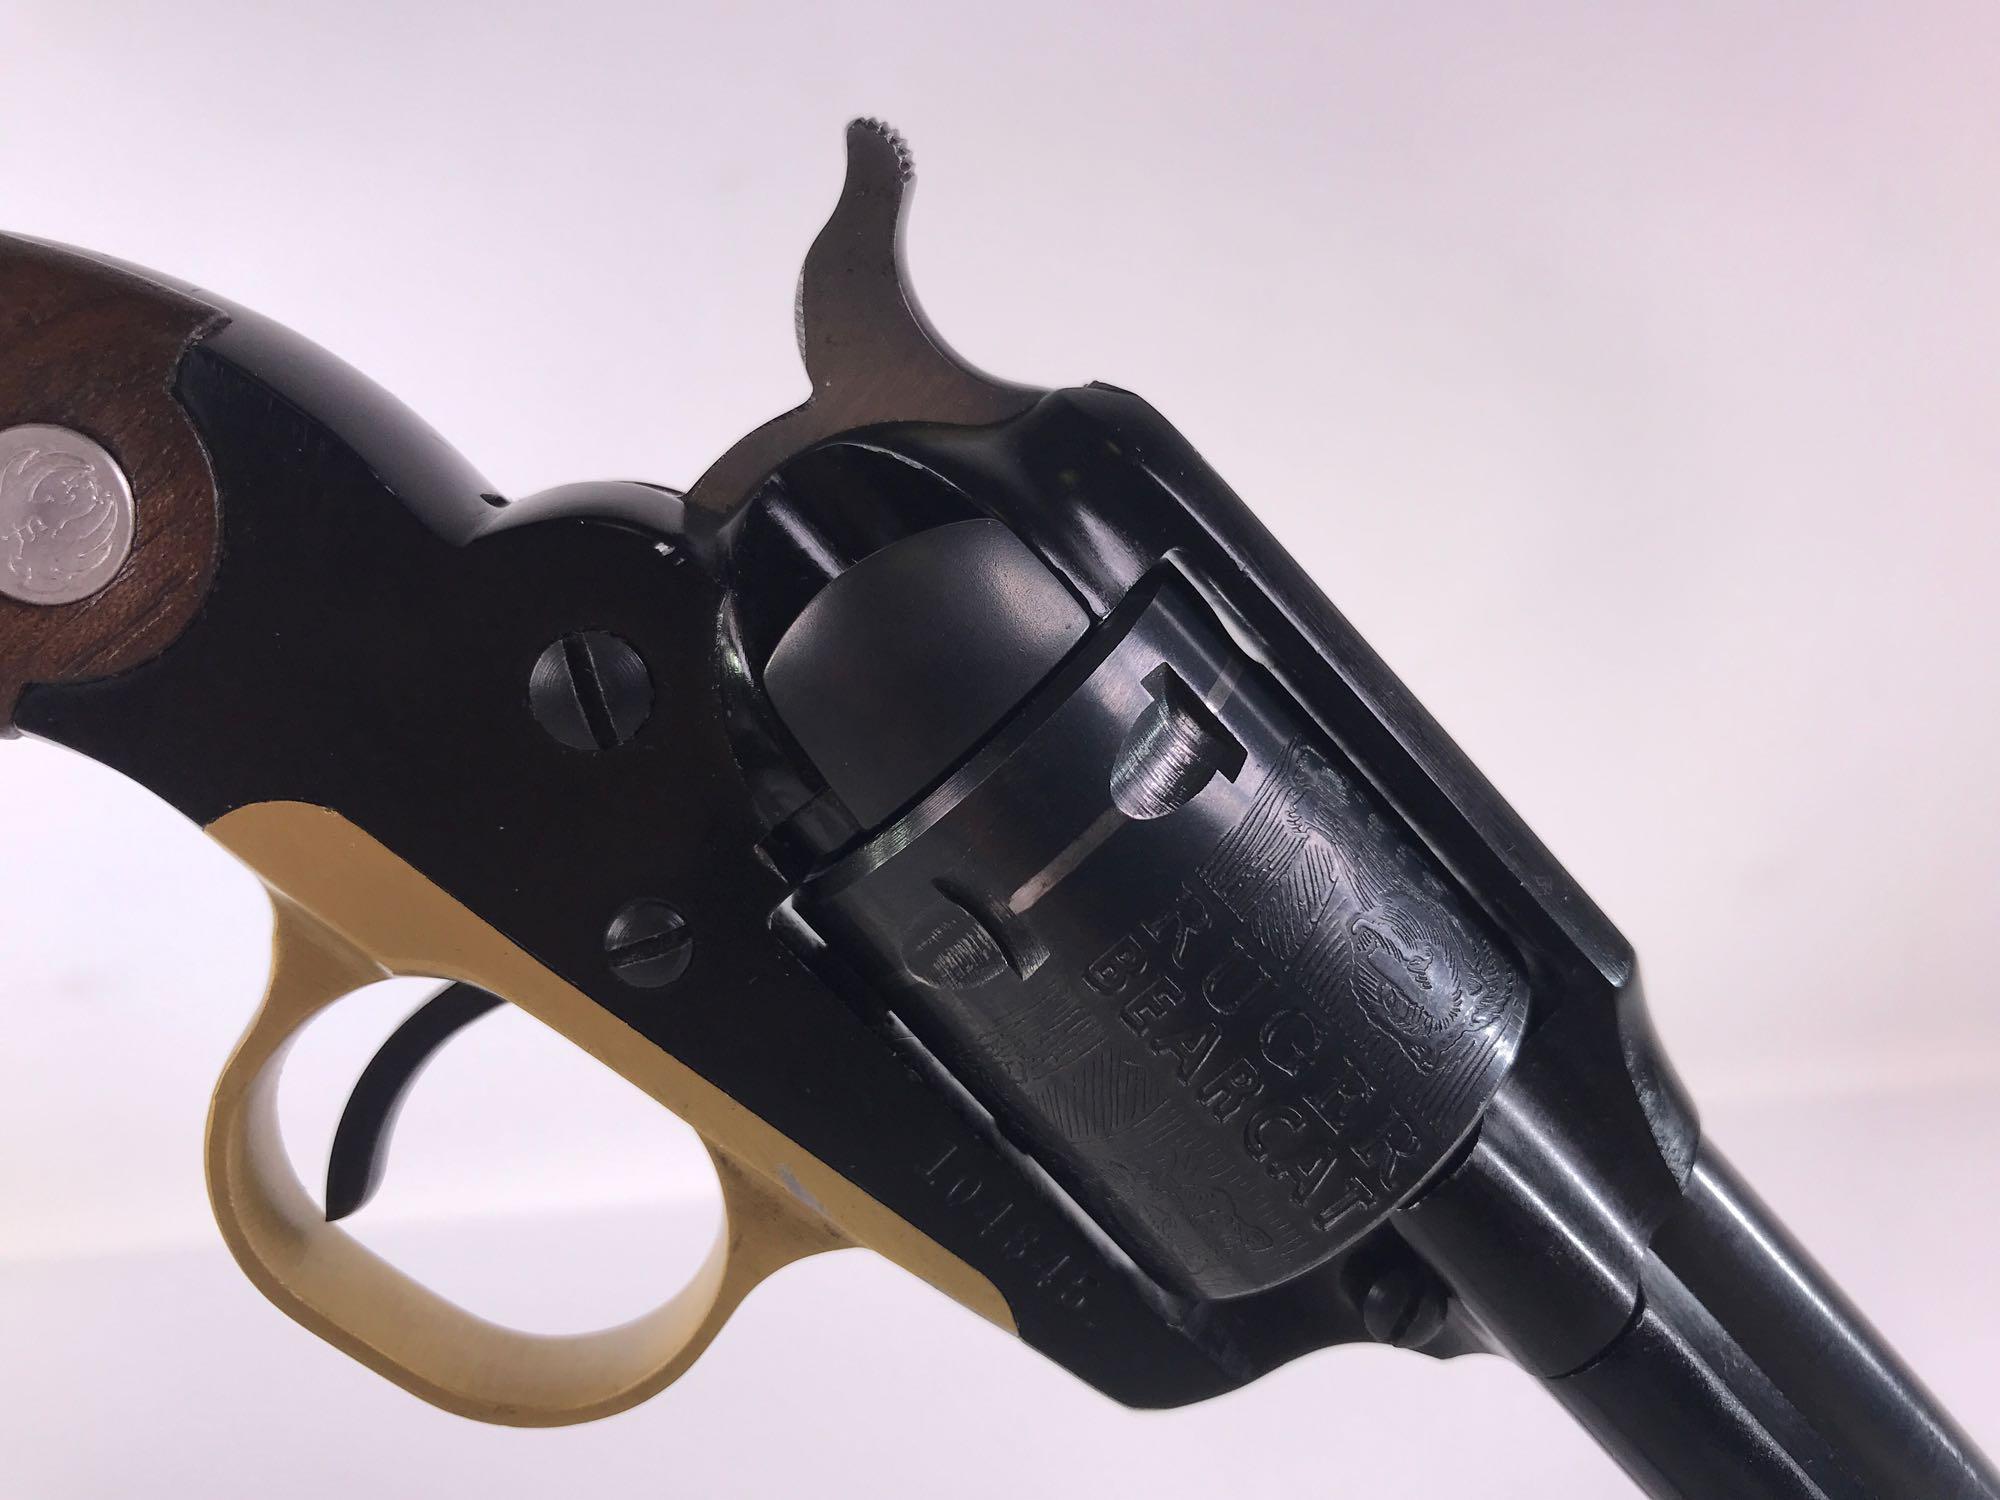 Ruger Bearcat .22 LR Revolver Pistol